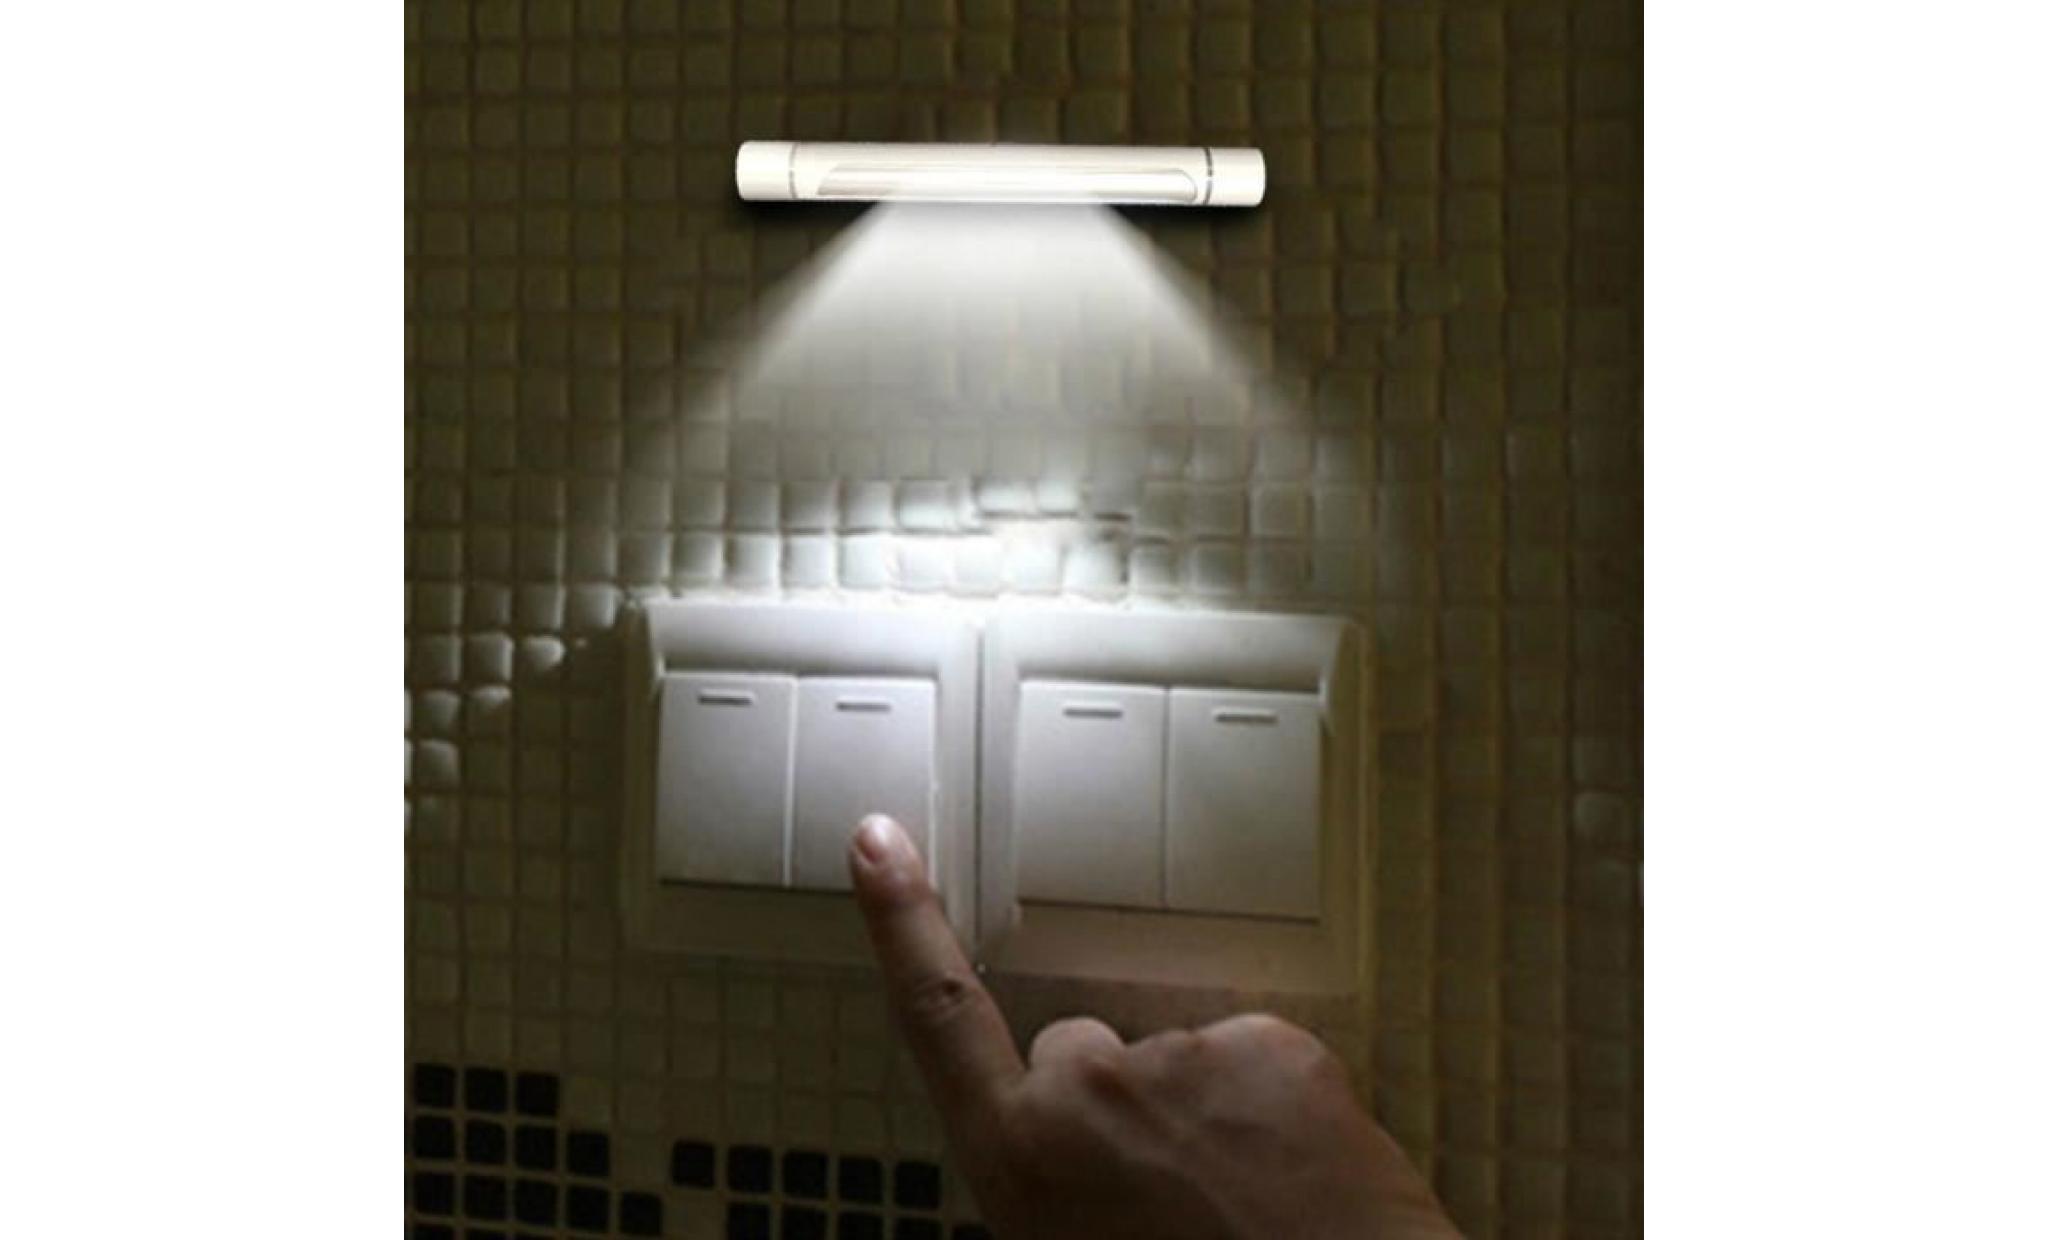 27cm sous l'armoire armoire étagère lampe lumière de bande pour la maison cuisine wall light     @batangerr19586 pas cher